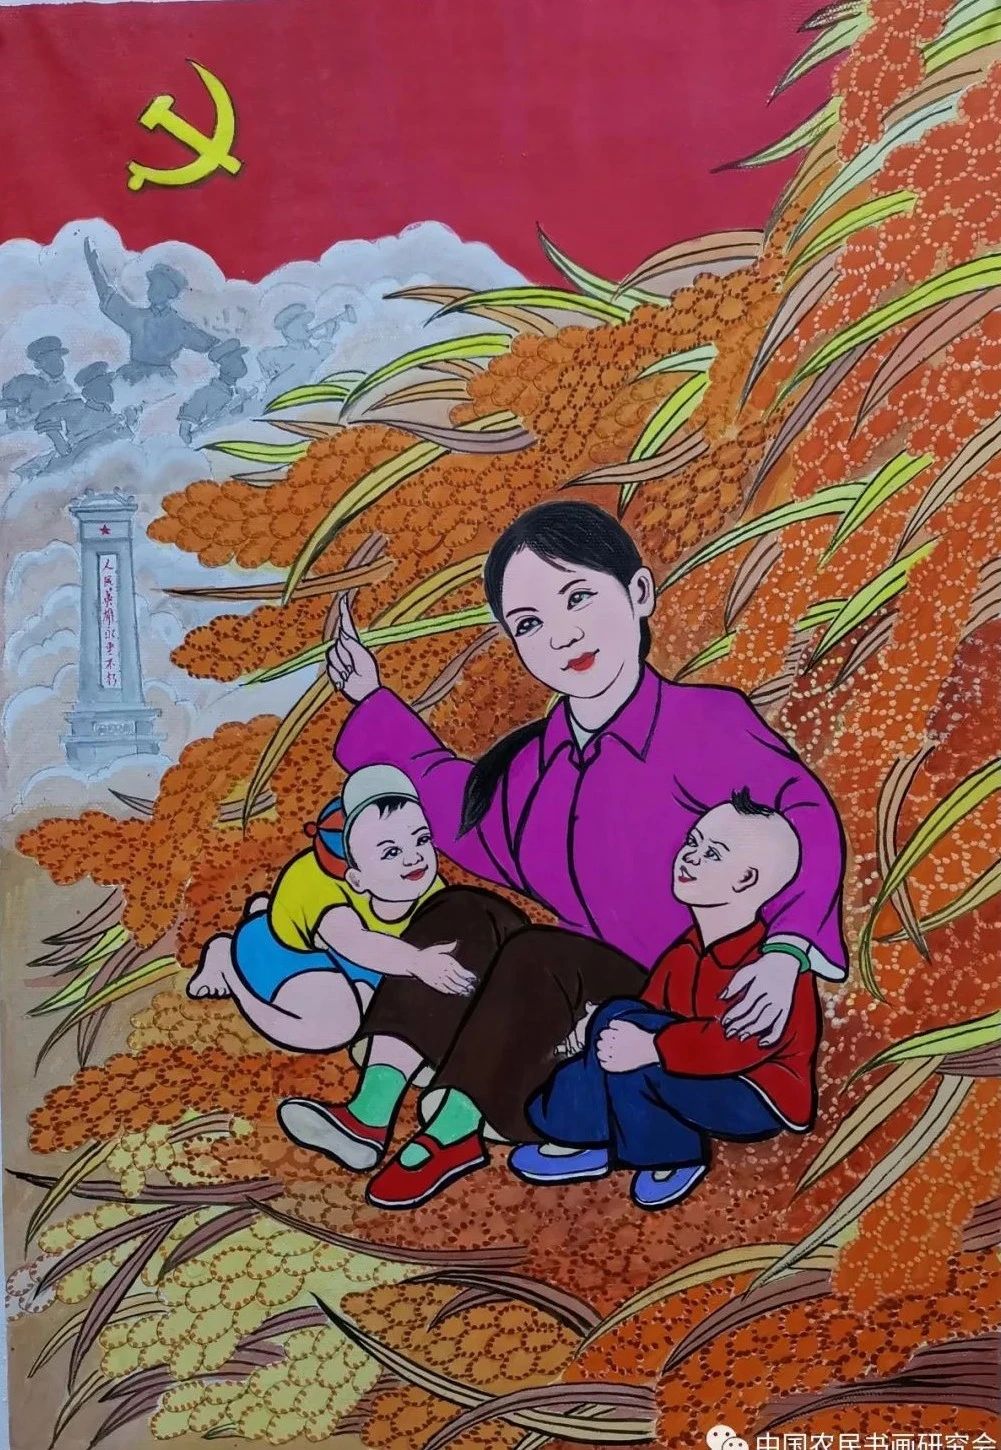 庆祝中国共产党成立100周年——农民永远心向党主题书画作品线上展